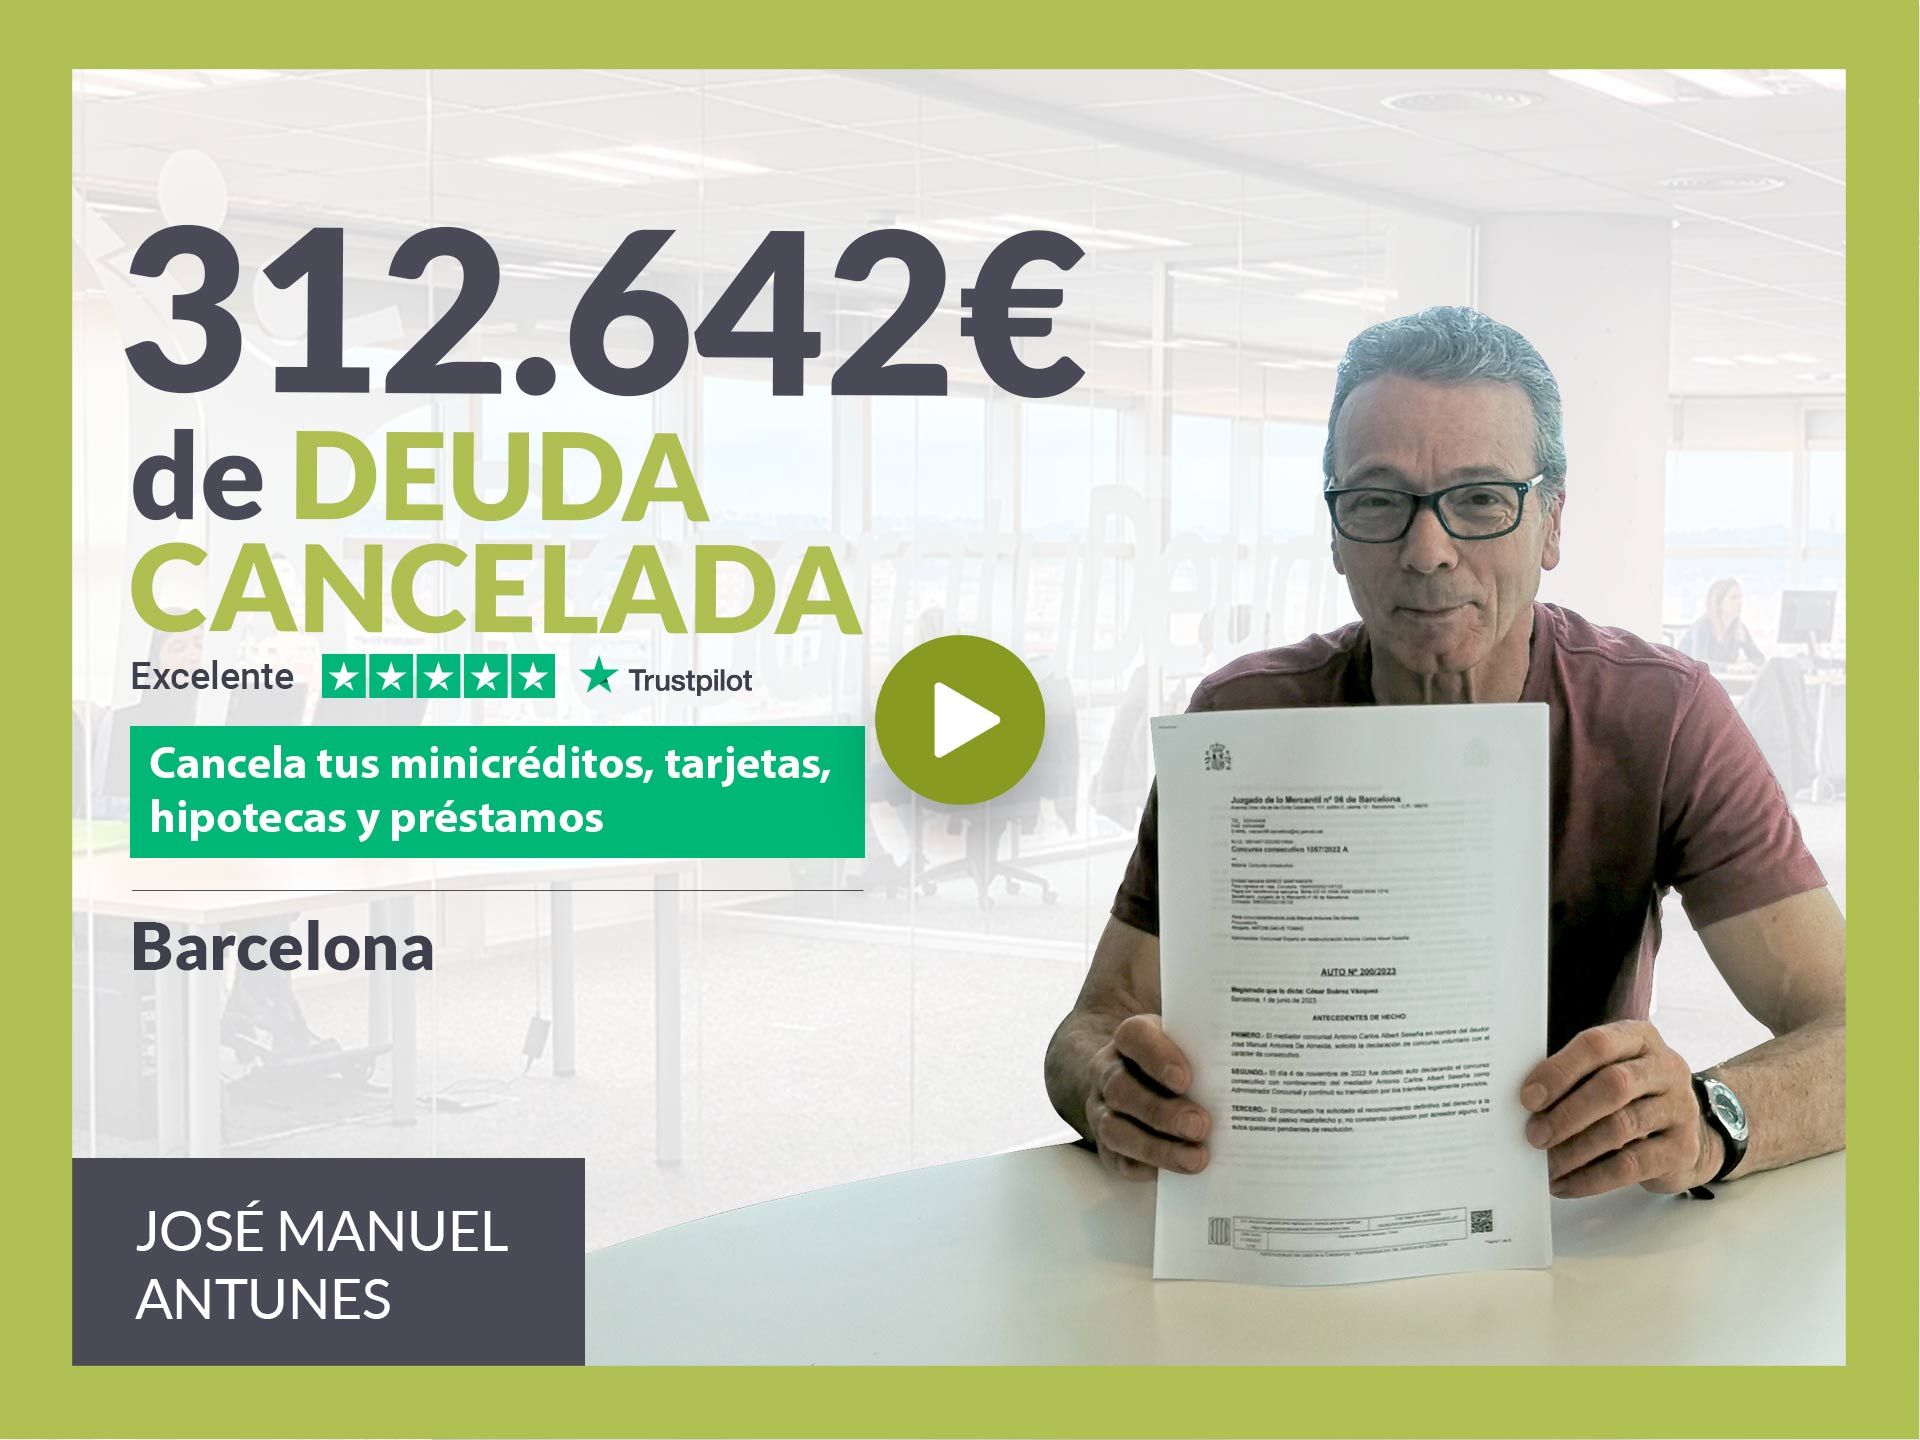 Repara tu Deuda Abogados cancela 312.642? en Barcelona (Catalunya) con la Ley de Segunda Oportunidad